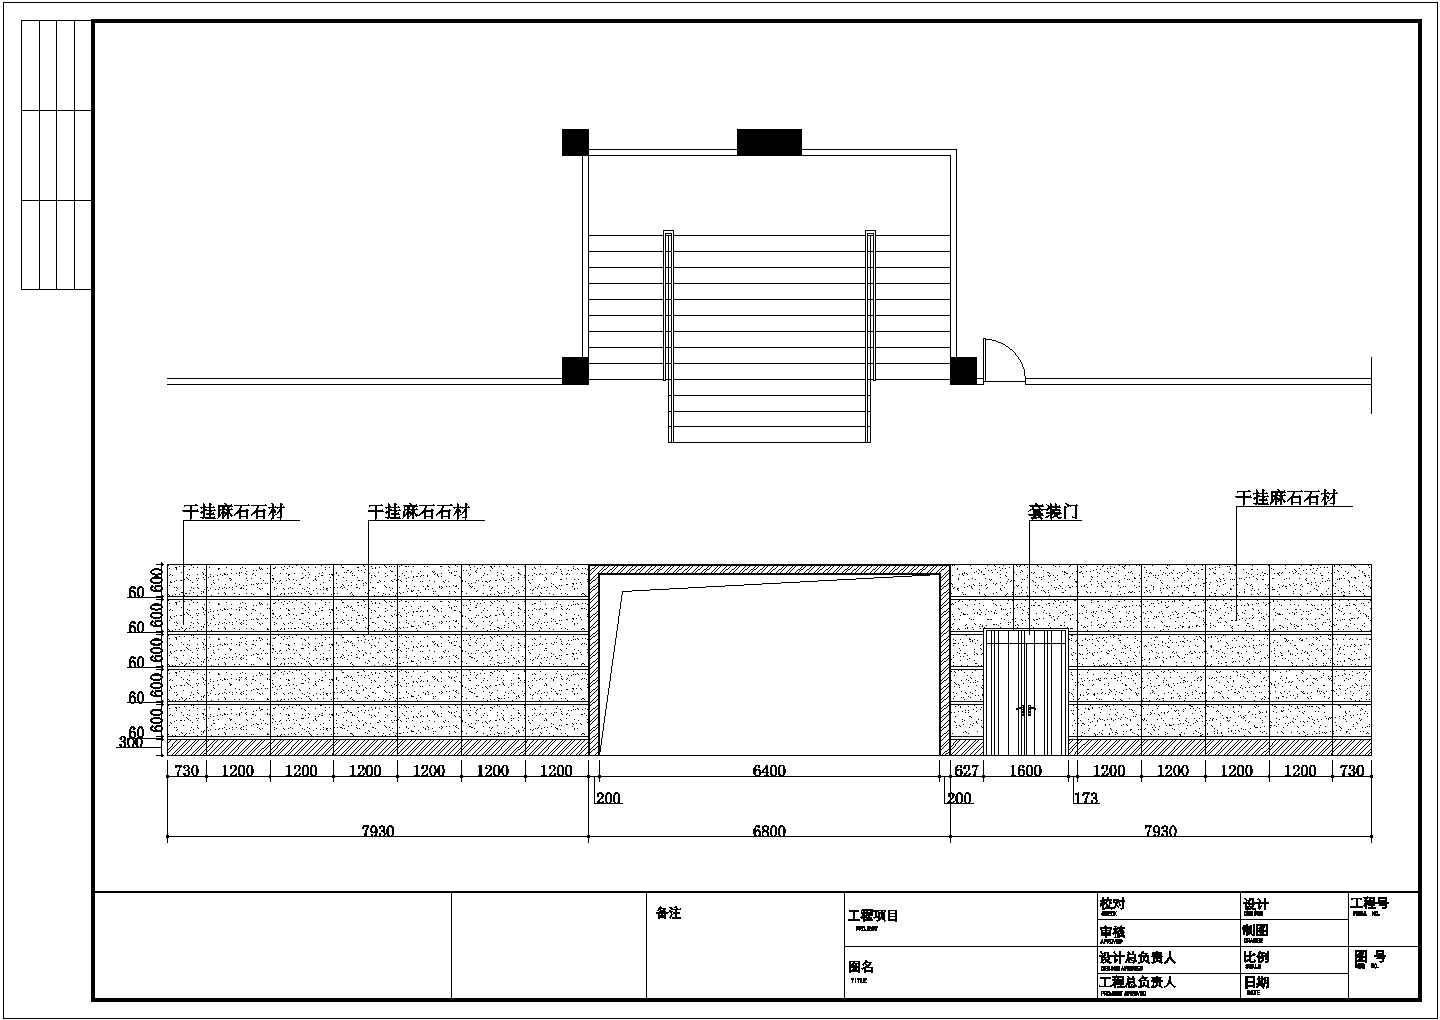 中海运办公楼建筑装修设计施工图纸